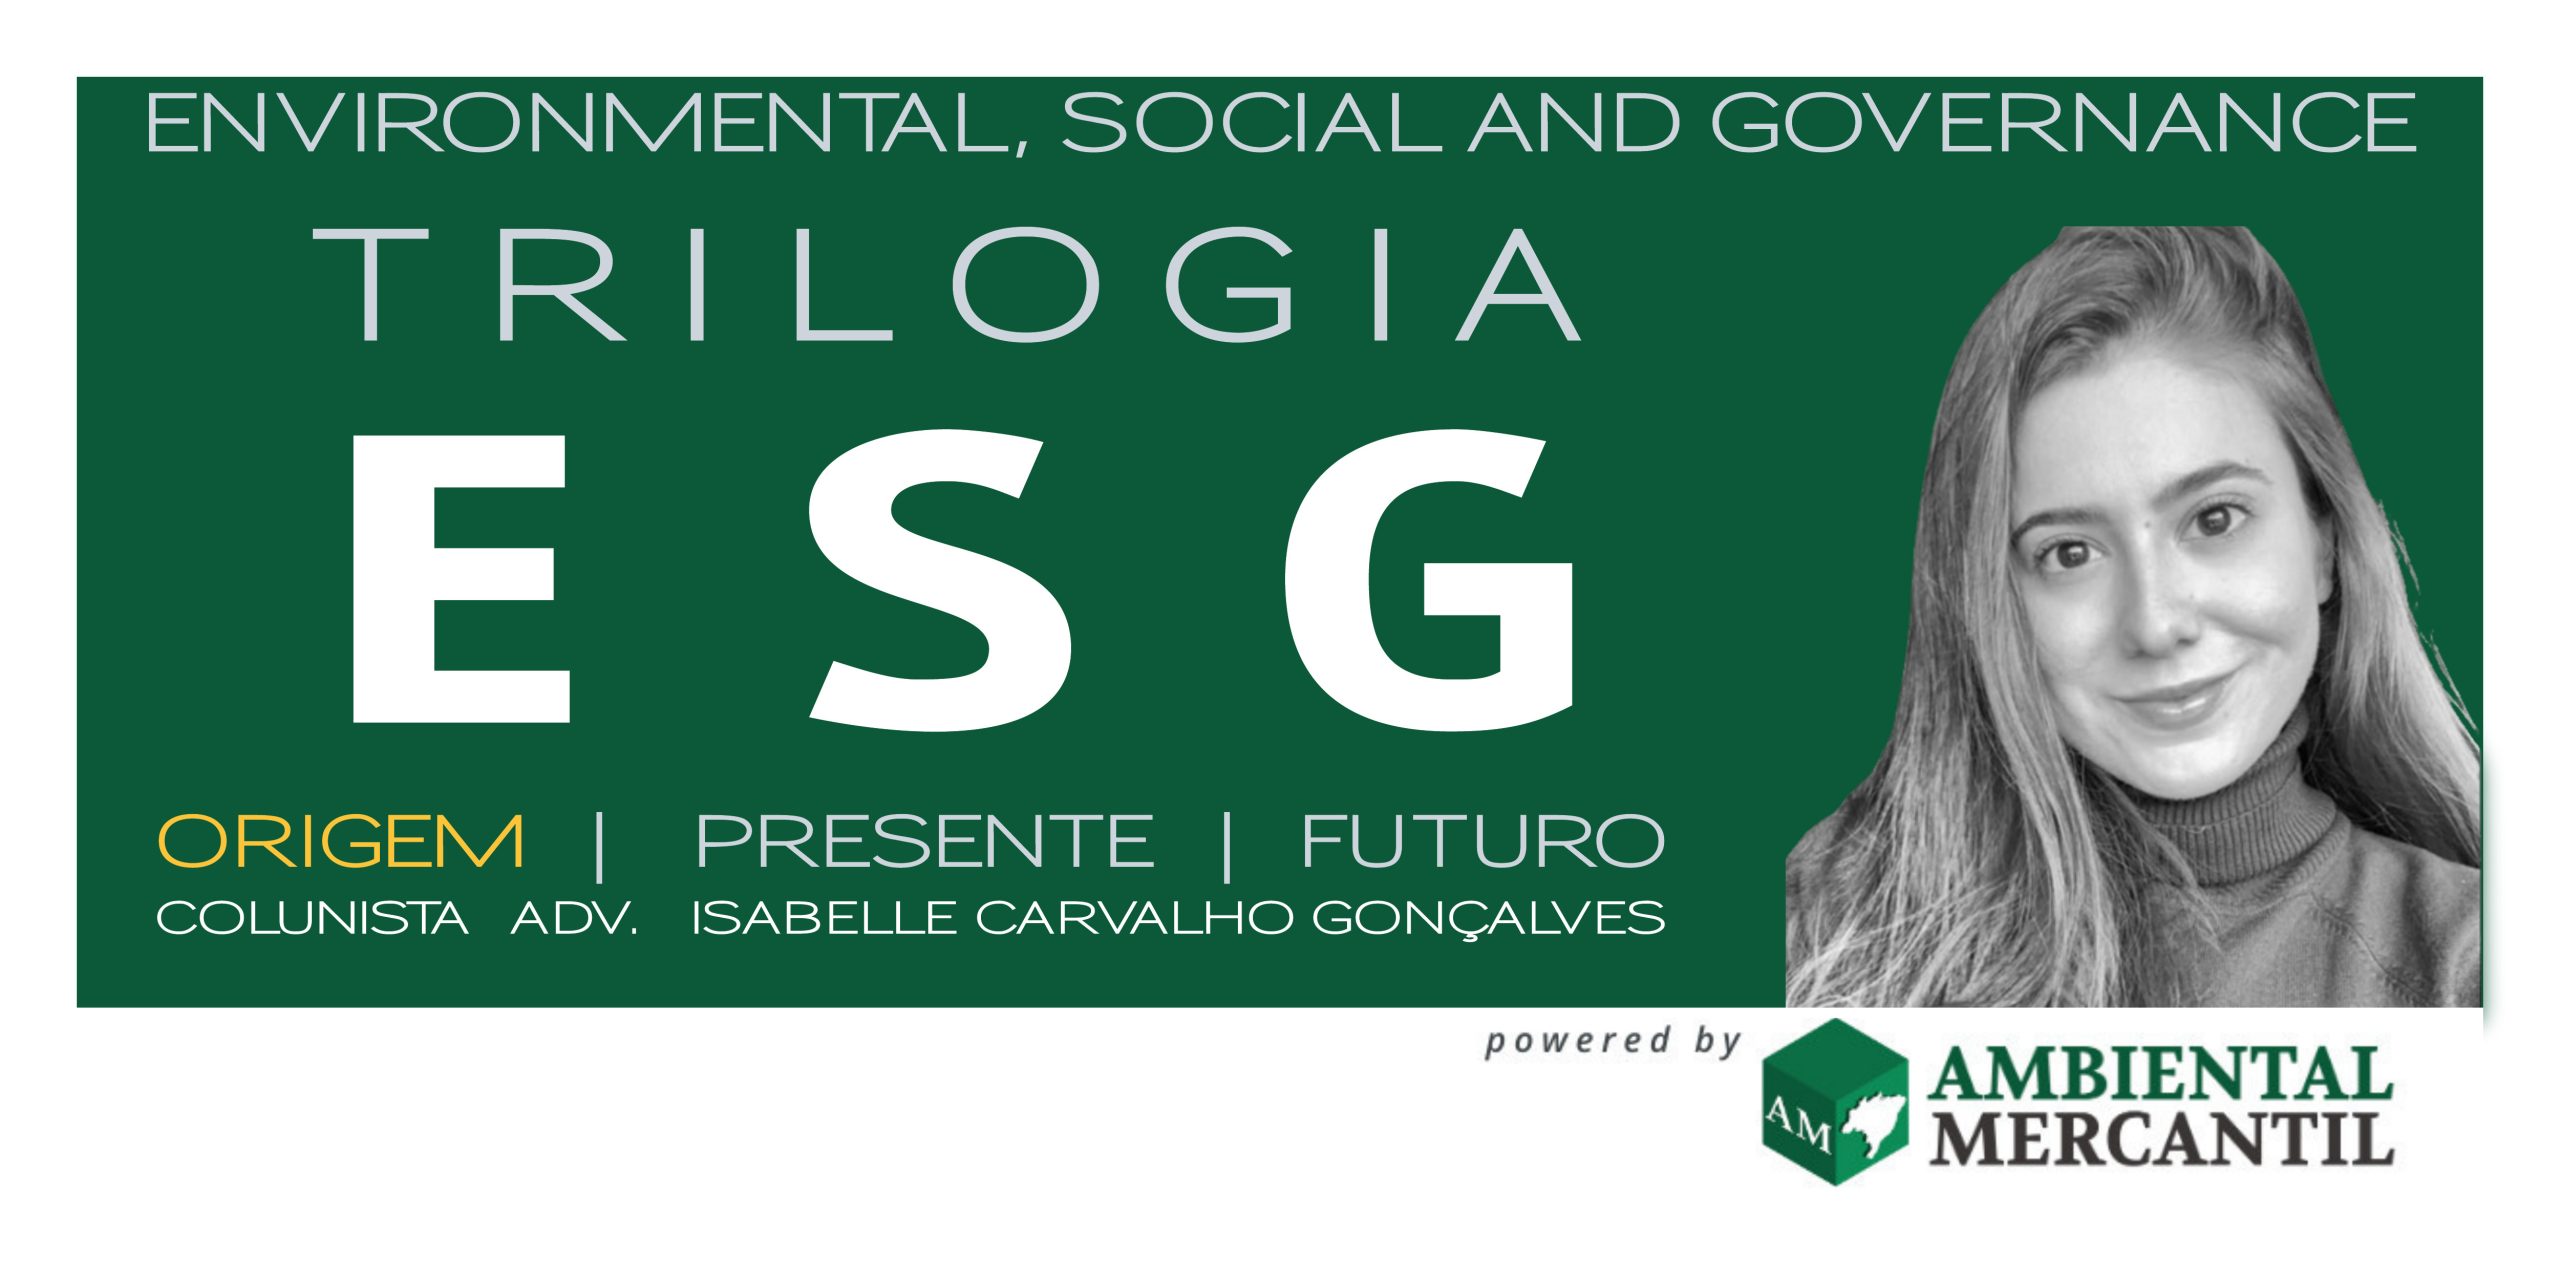 TRILOGIA ESG: ORIGEM |  ENVIRONMENTAL, SOCIAL AND GOVERNANCE